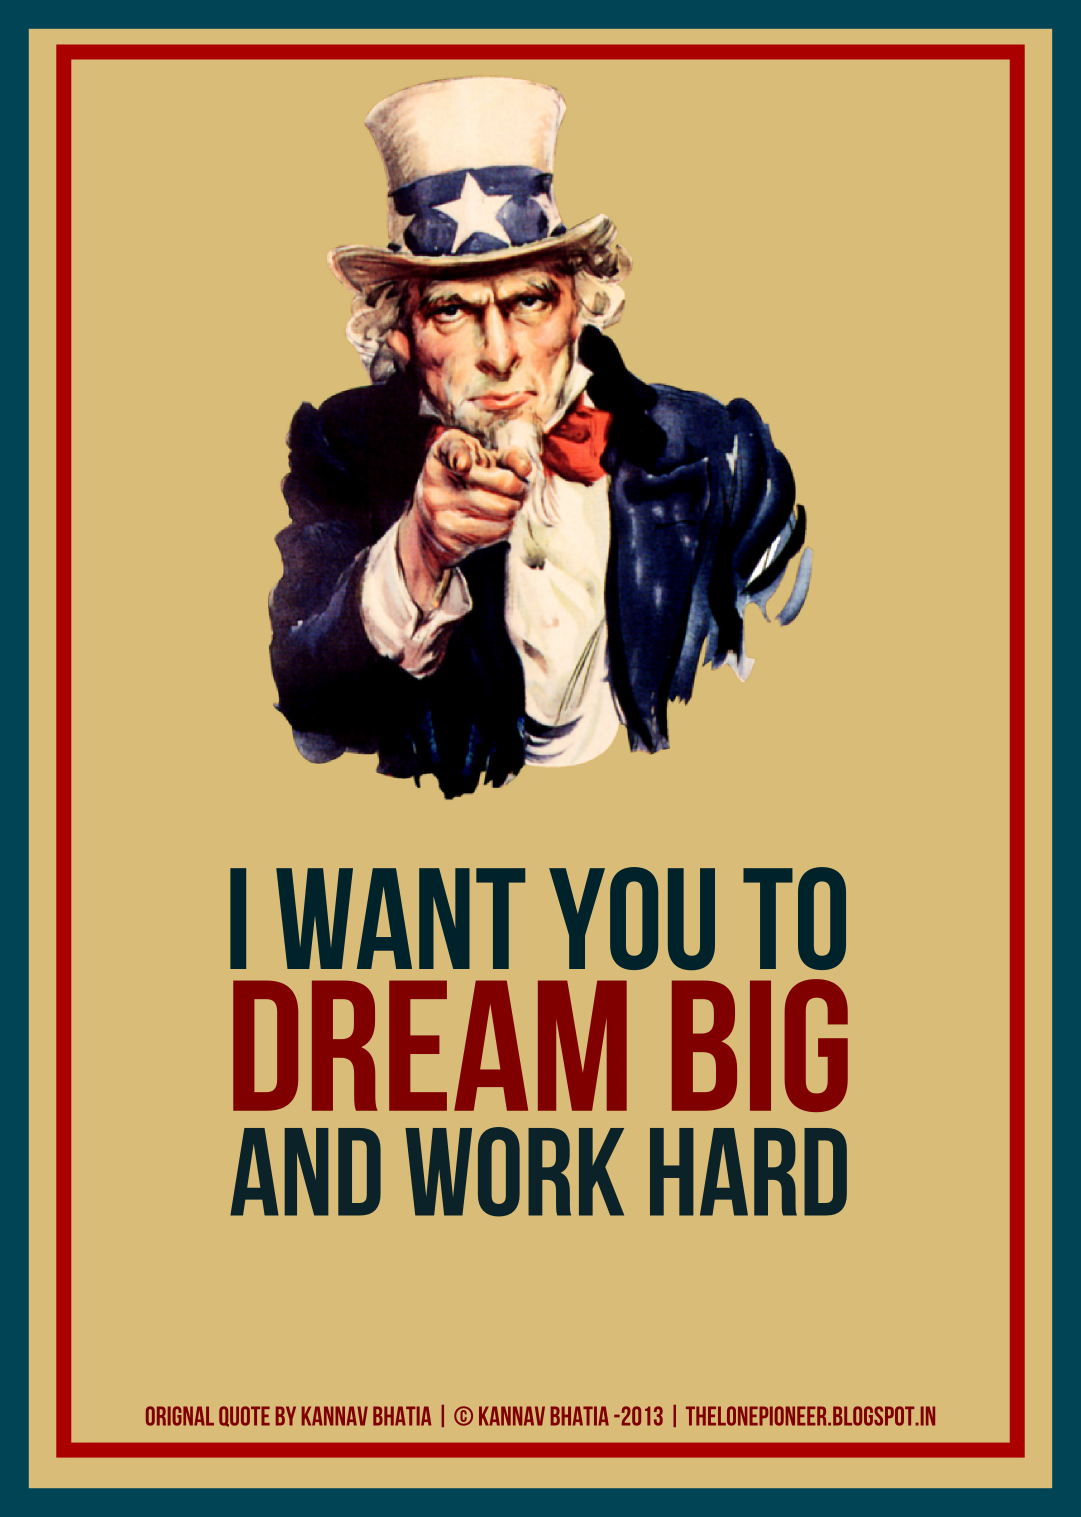 Дядя Сэм Кукрыниксы. Плакат США дядя Сэм i want you. Дядюшка Сэм плакат. Американский плакат с призывом.